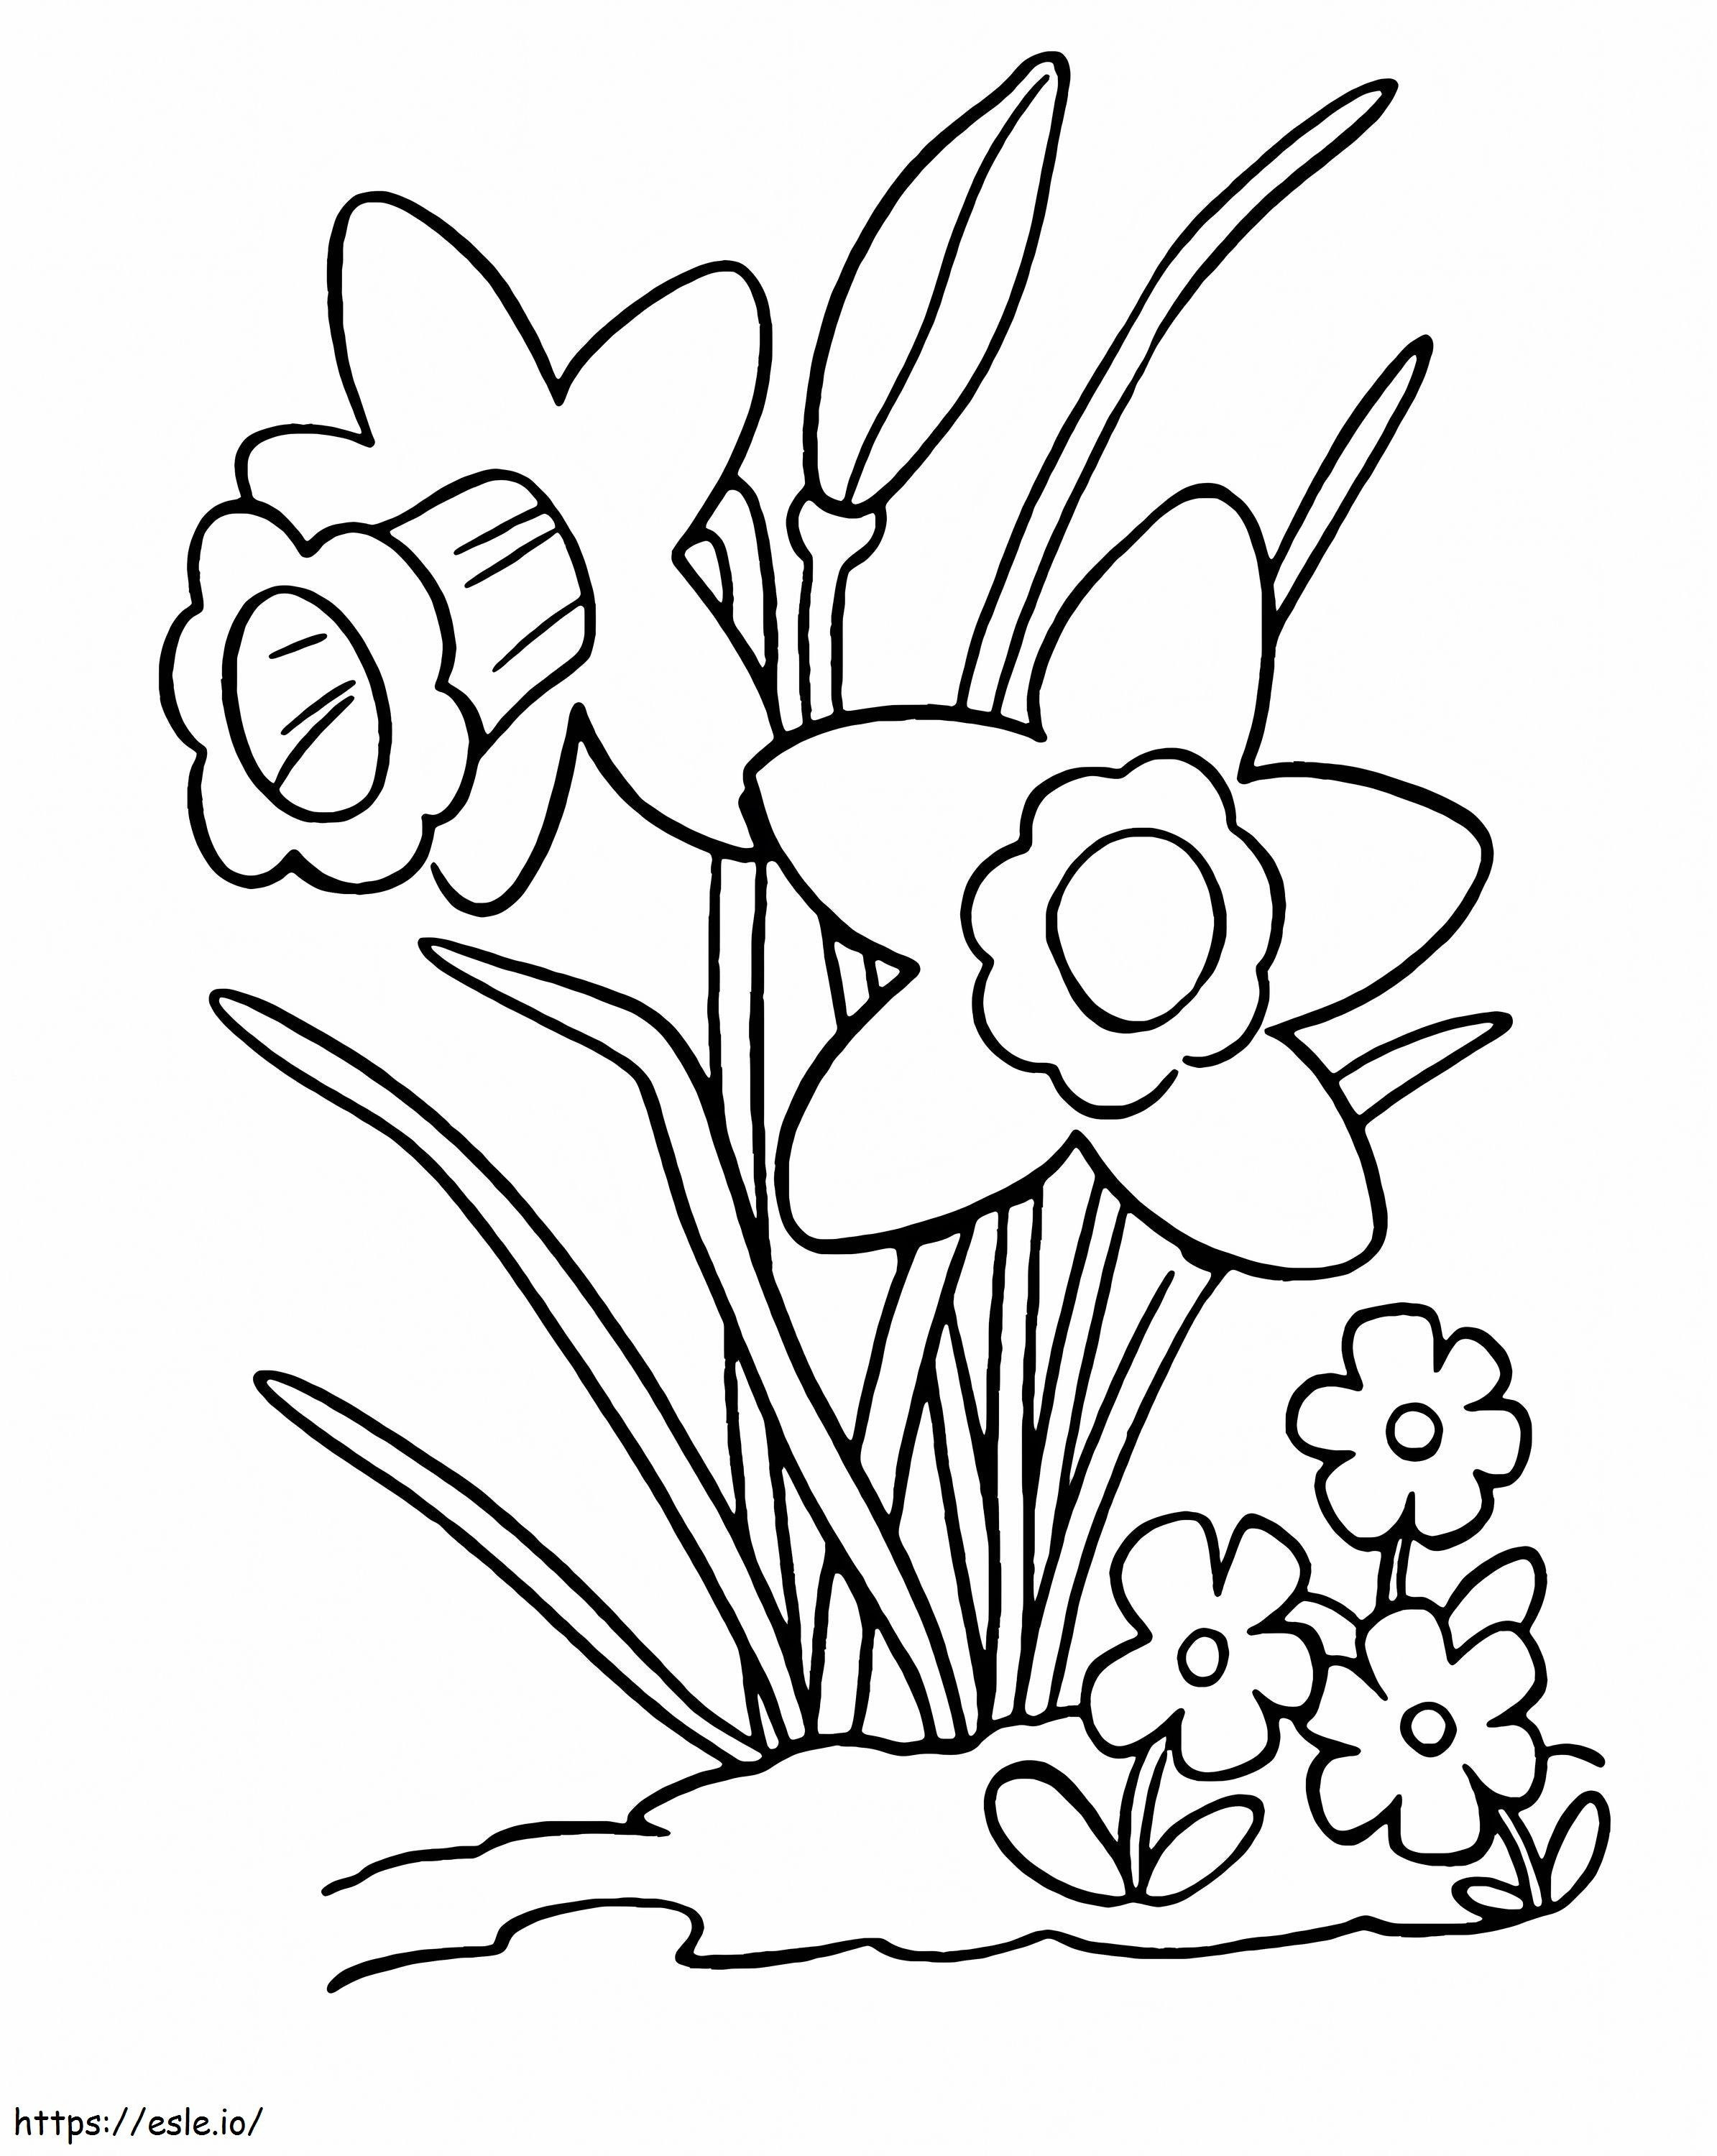 Coloriage Narcisse simple à imprimer dessin